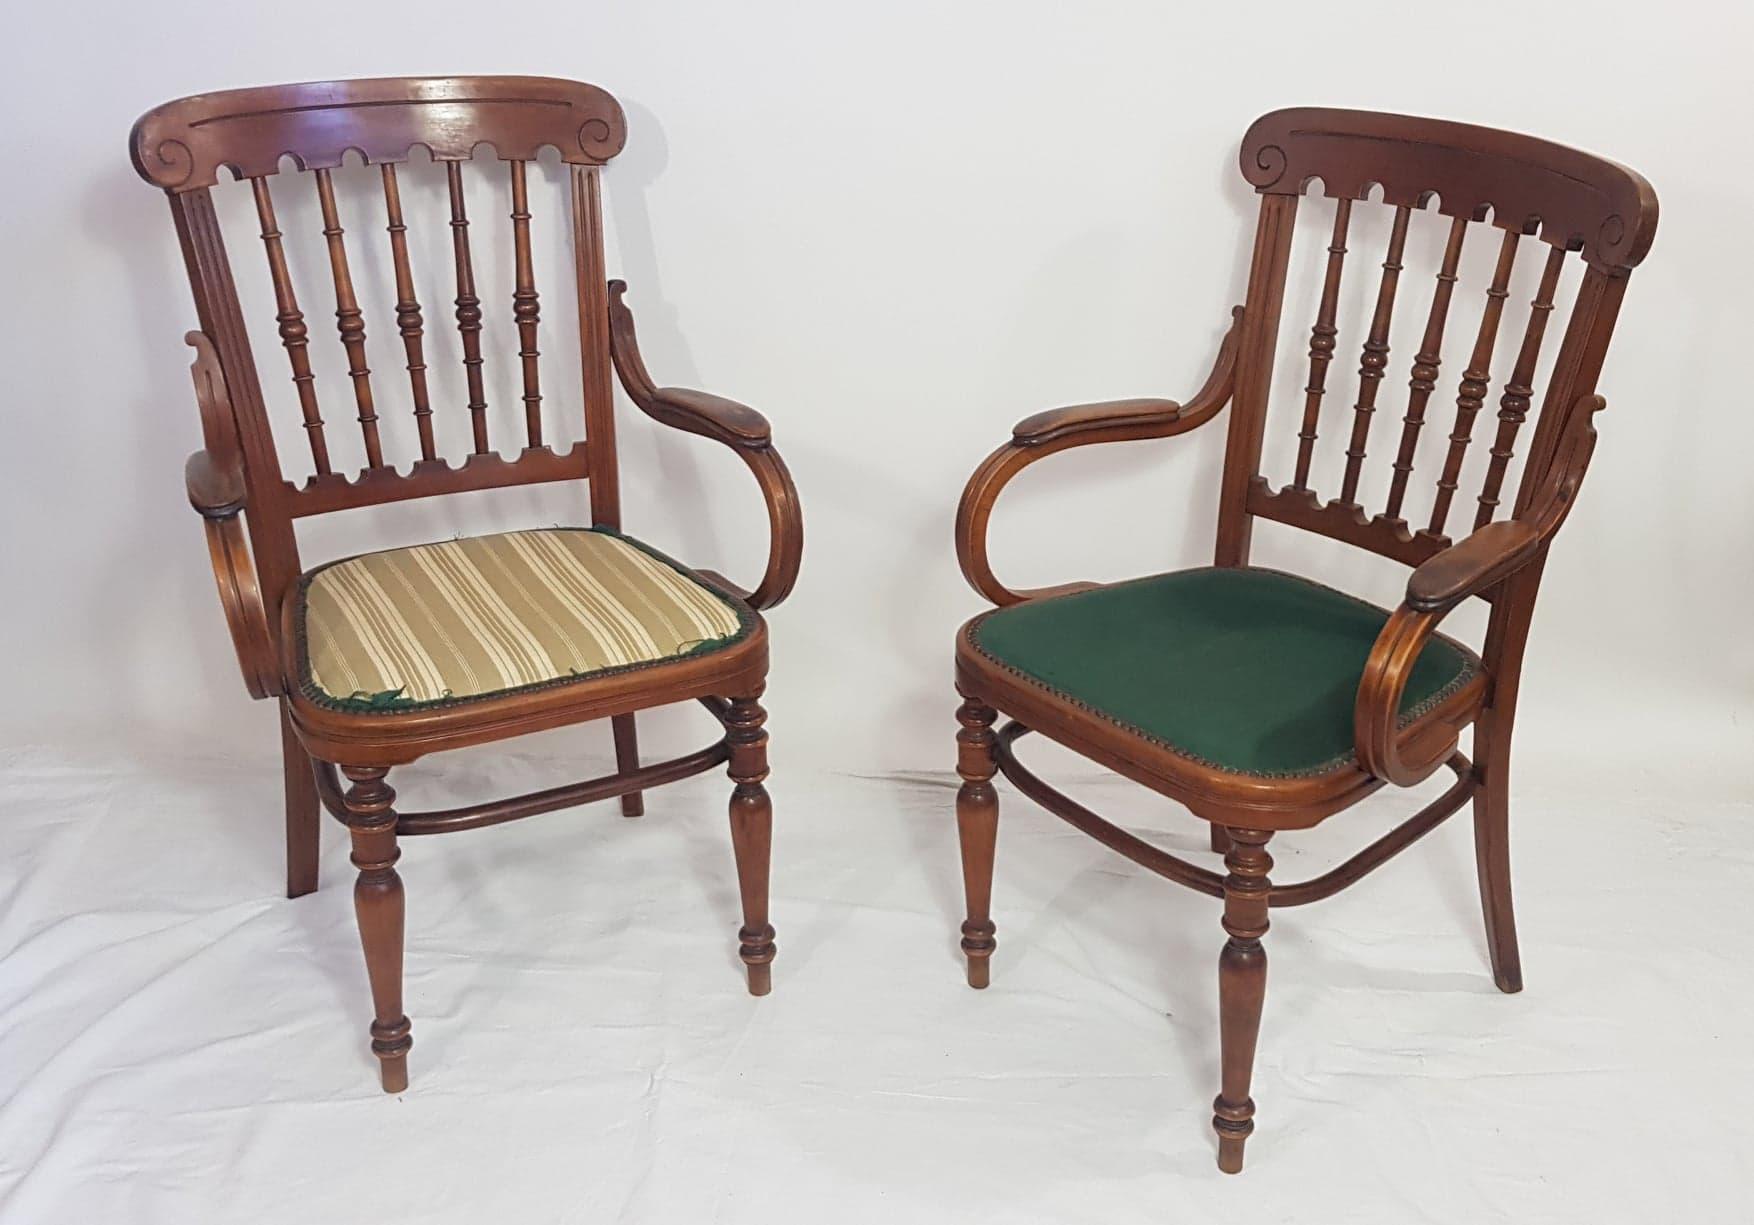 Un ensemble de deux chaises, deux fauteuils et un banc en bois courbé. Du début du 20e siècle.
Ils sont en très bon état.
